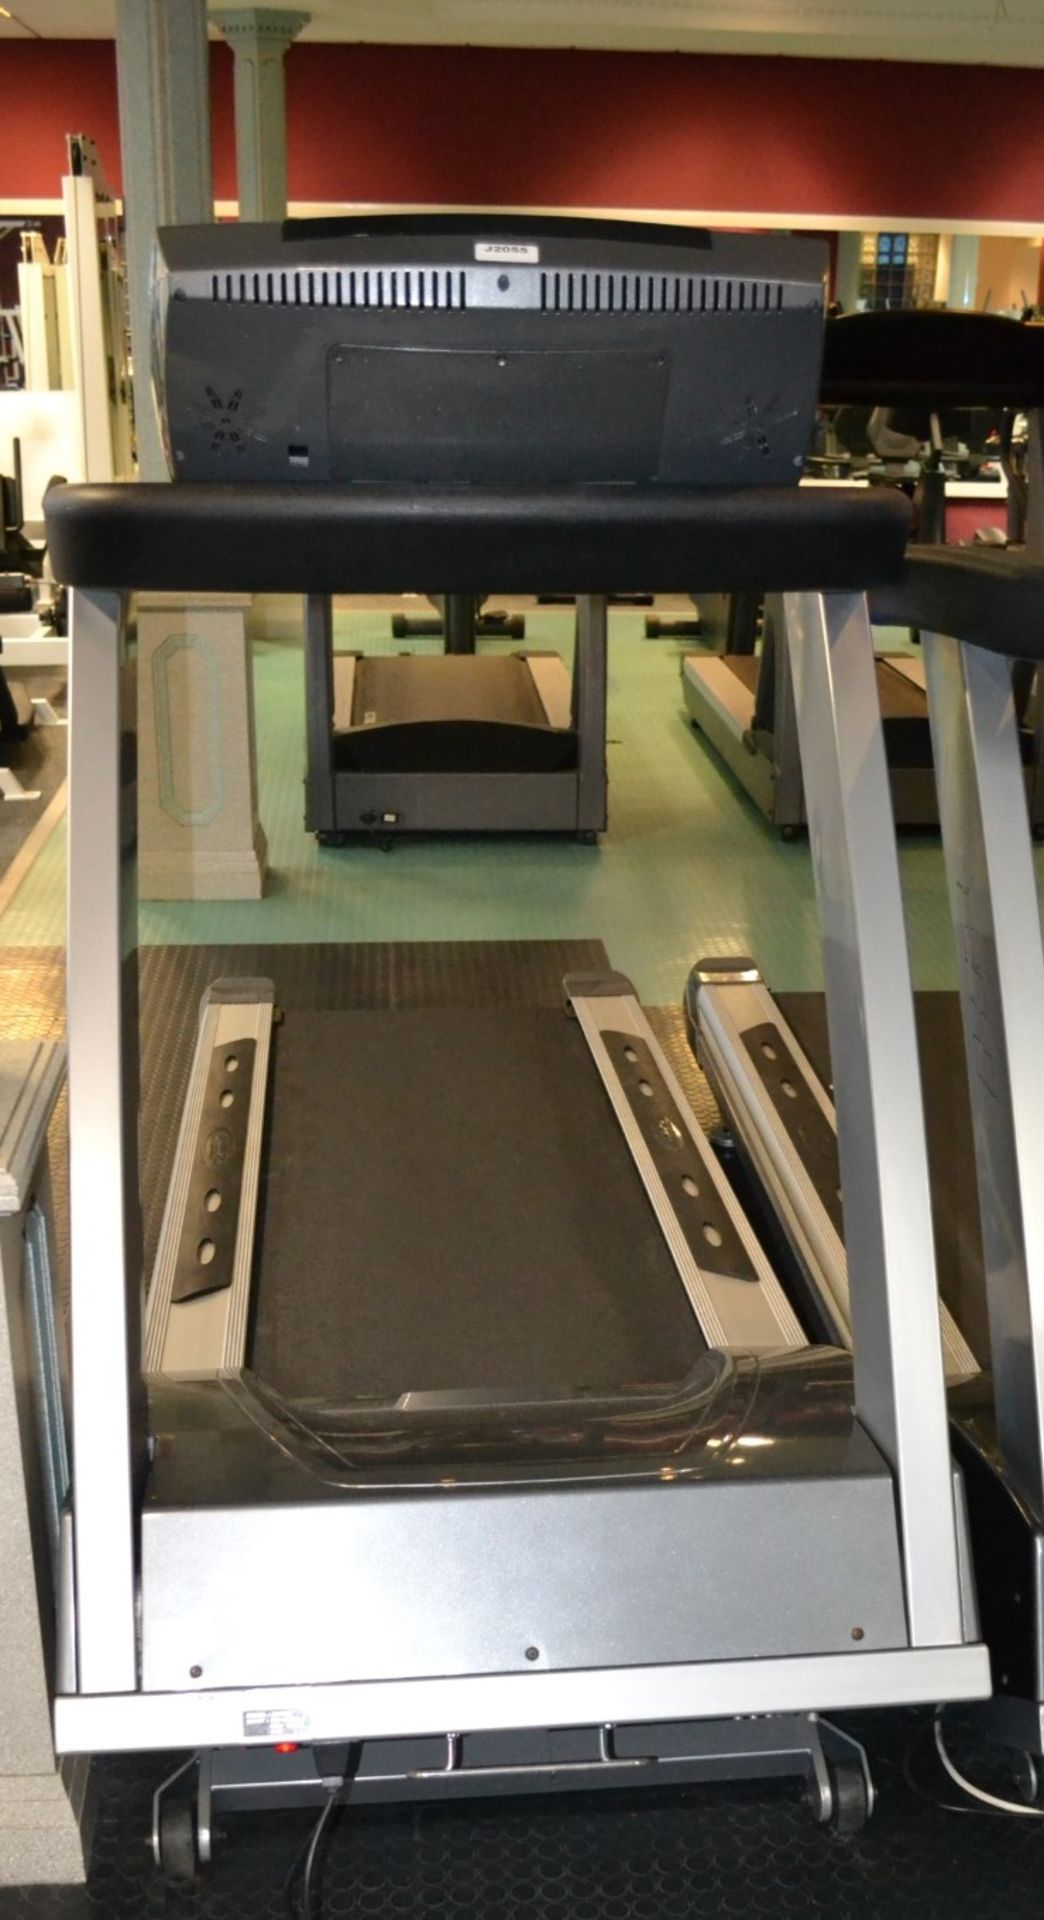 1 x BH Fitness Treadmill Model BH 300T - Dimensions: L230 x H150 x W82cm - Ref: J2055/1FG - - Image 2 of 3